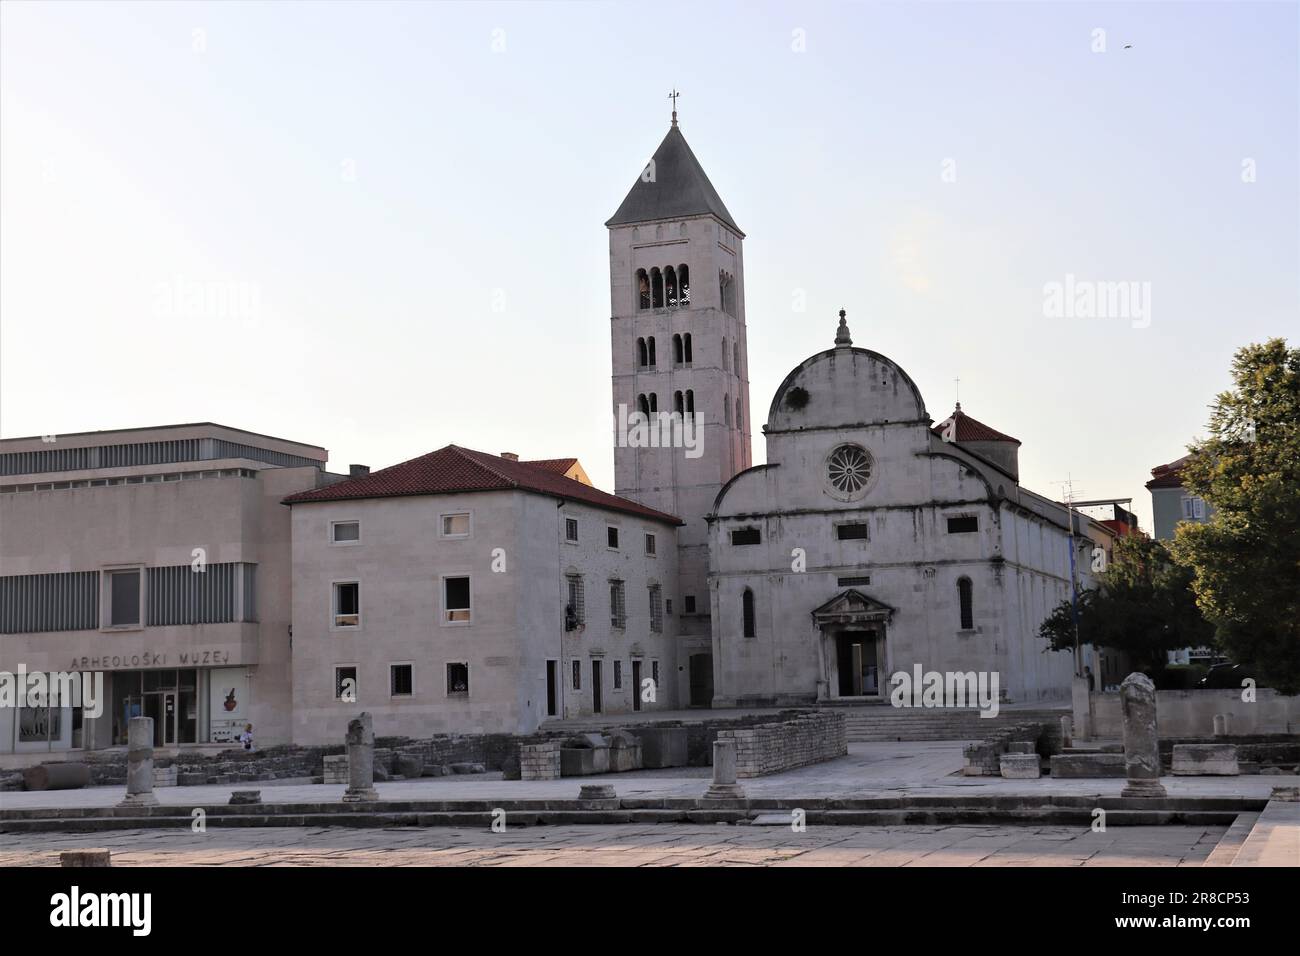 La città di Zara e i monumenti storici con chiese e una cattedrale che sono ancora in uso oggi. Le foto mostrano anche la parte costiera della città. Foto Stock